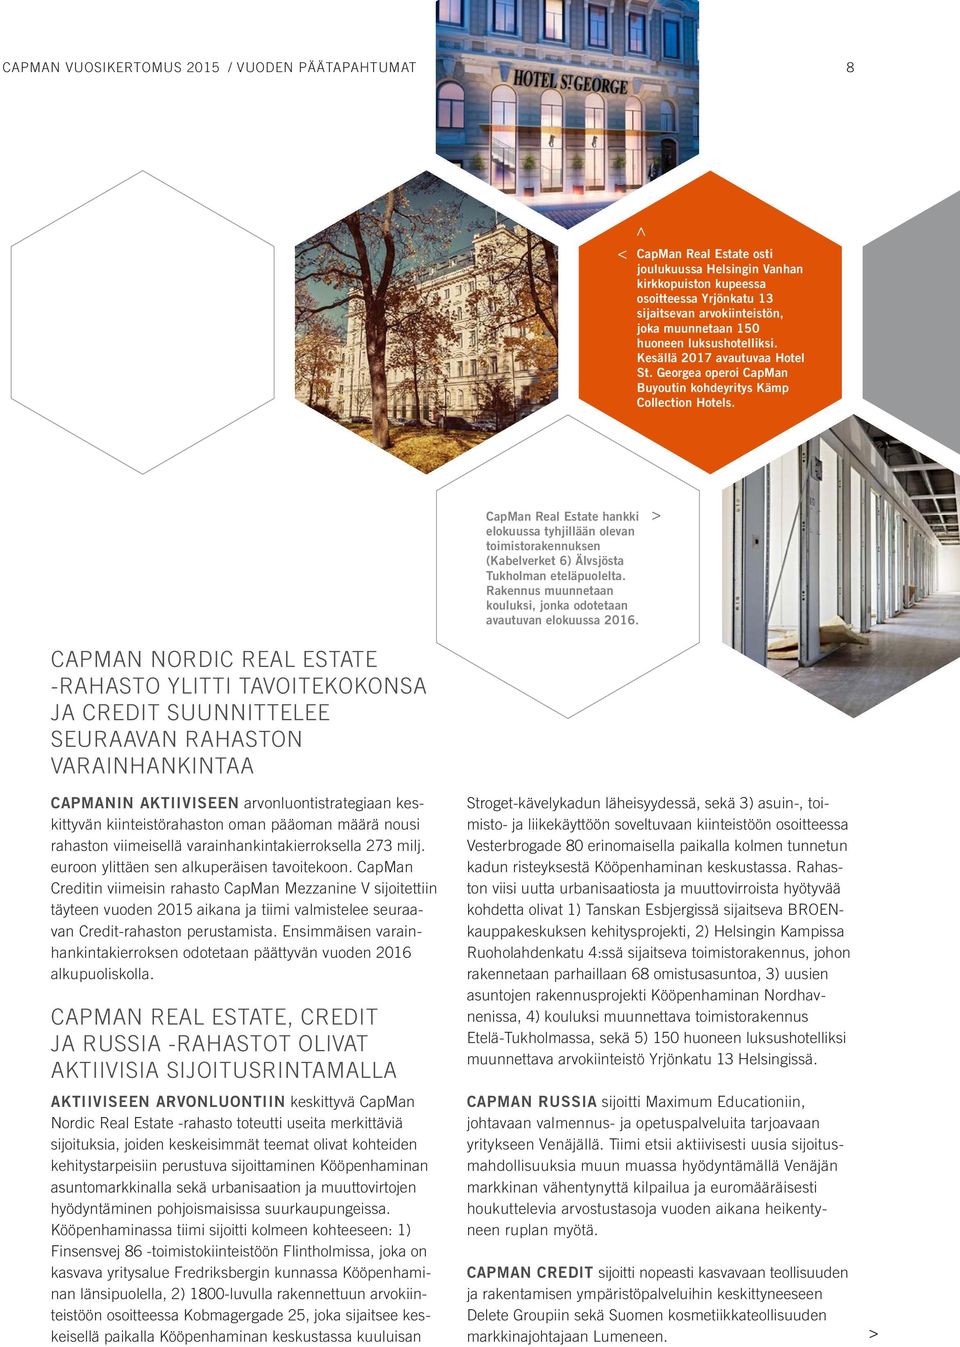 CapMan Real Estate hankki elokuussa tyhjillään olevan toimistorakennuksen (Kabelverket 6) Älvsjösta Tukholman eteläpuolelta. Rakennus muunnetaan kouluksi, jonka odotetaan avautuvan elokuussa 2016.